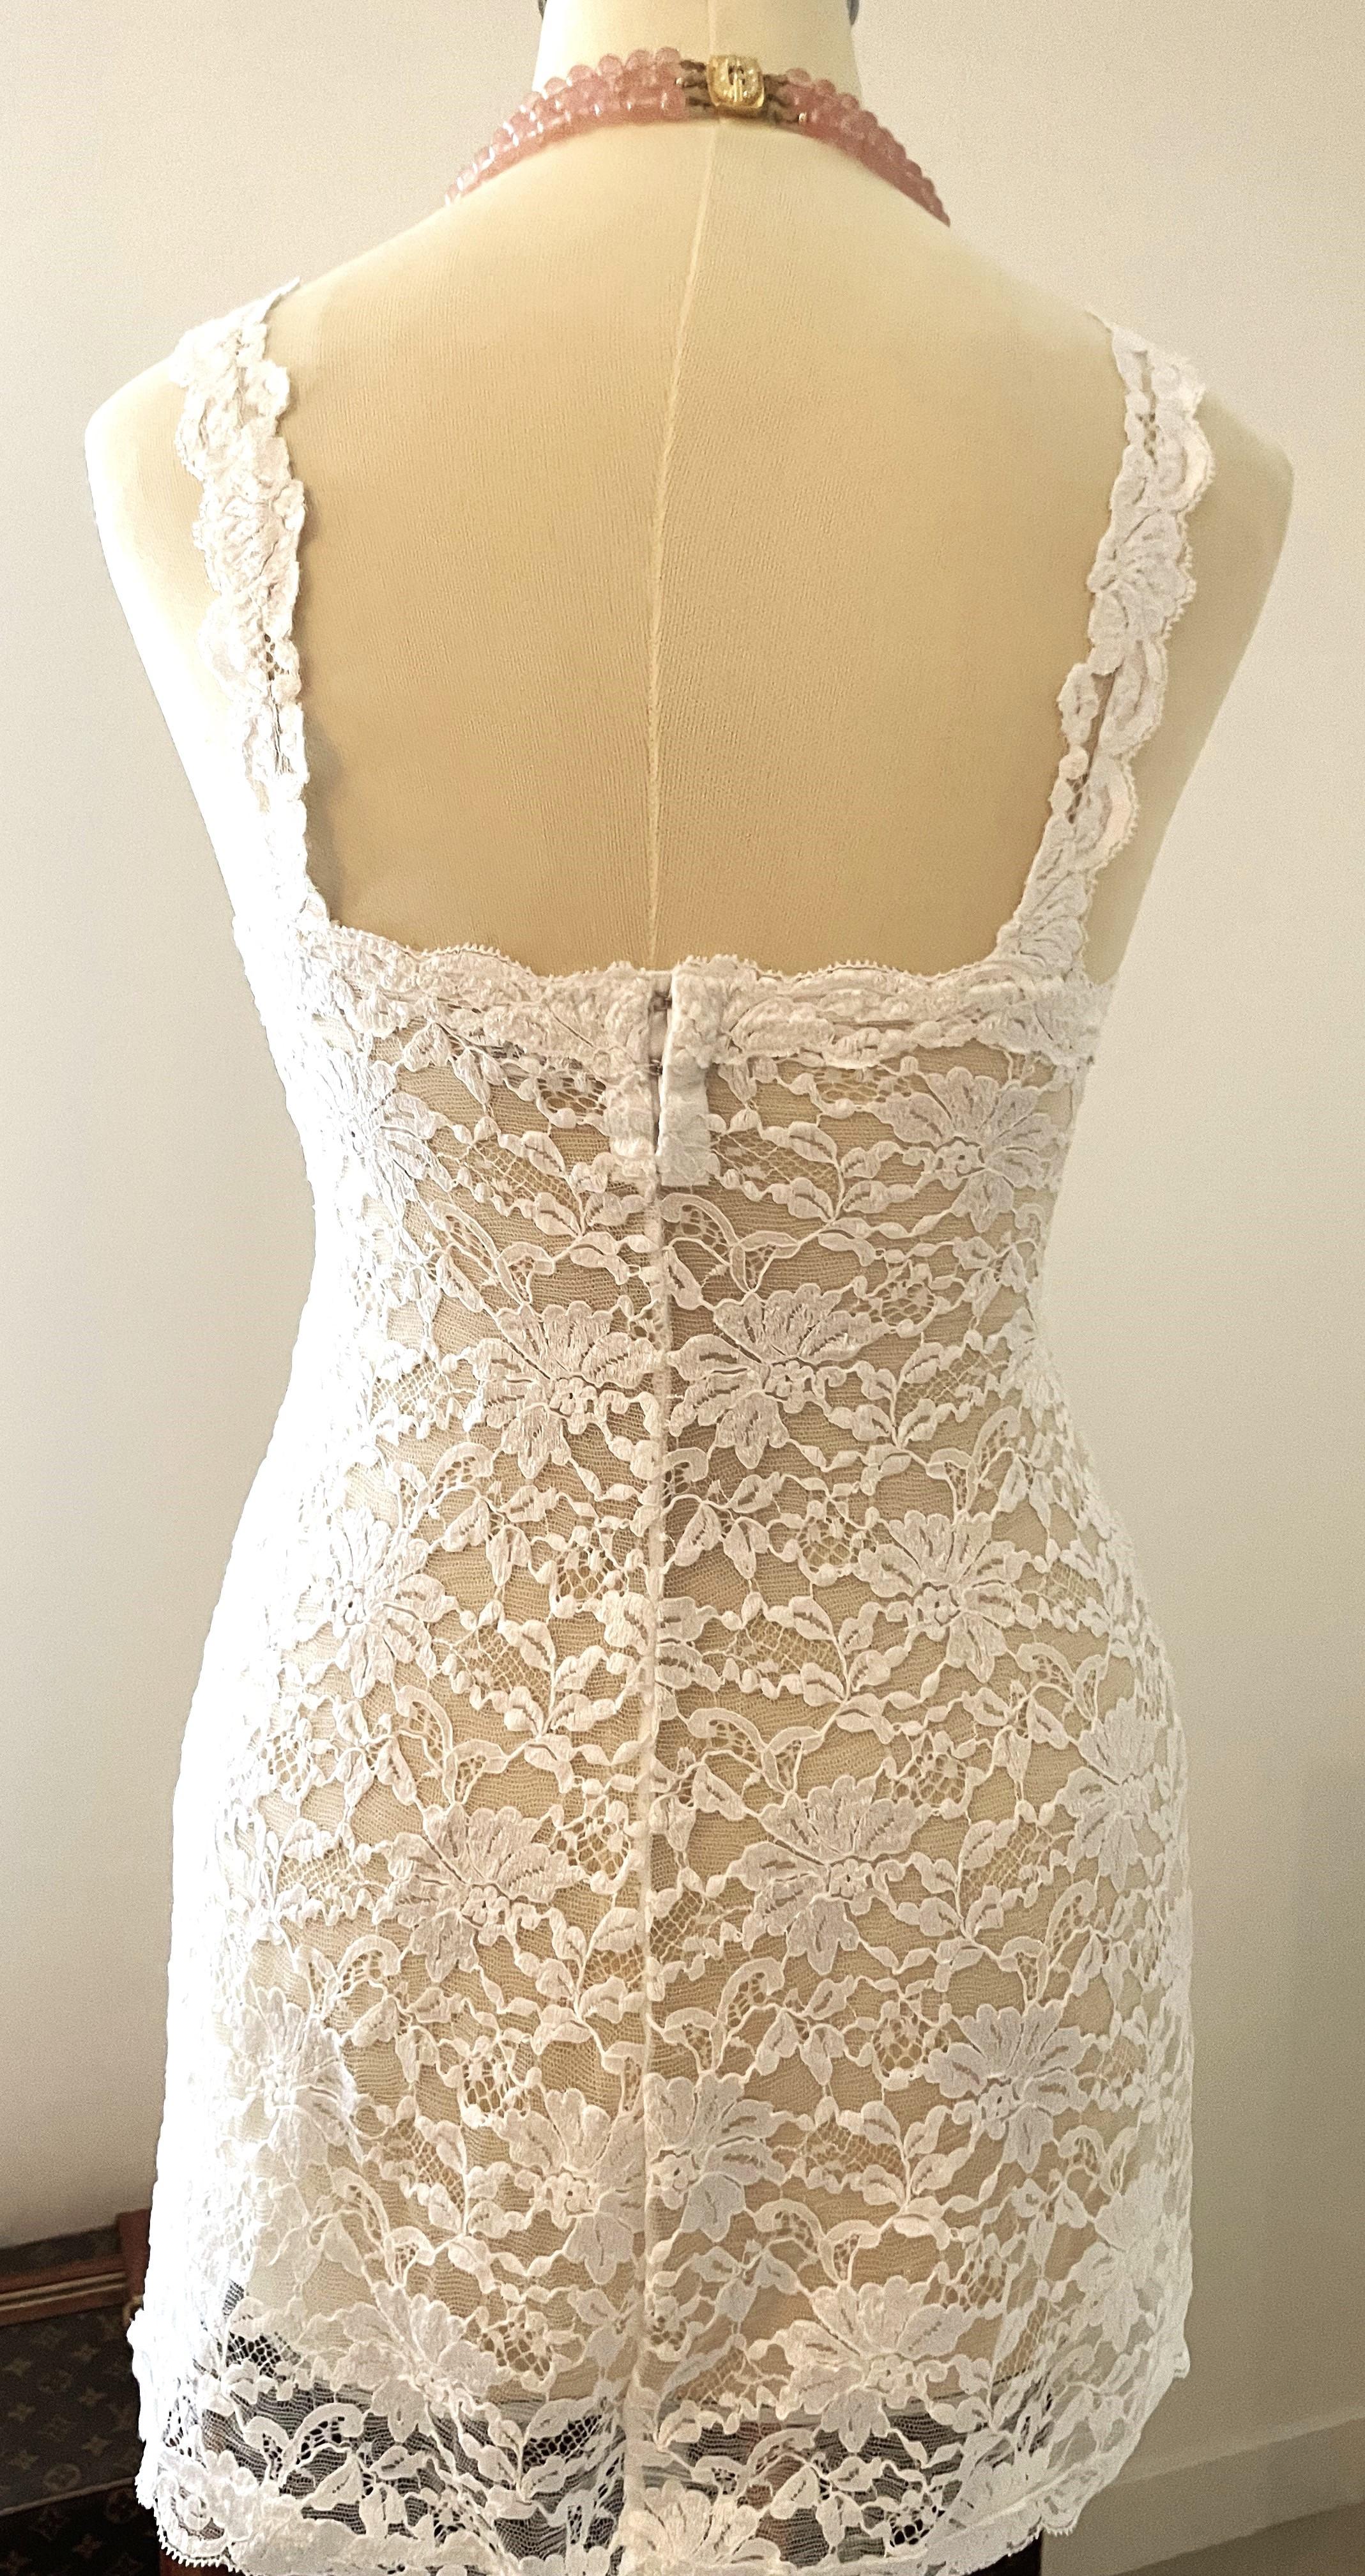 Vintage 90er sehr gut erhaltenes La Perla Slip Dress in schöner weißer Spitze. Perfekte Passform. Sexy, aber stilvoll. Das 